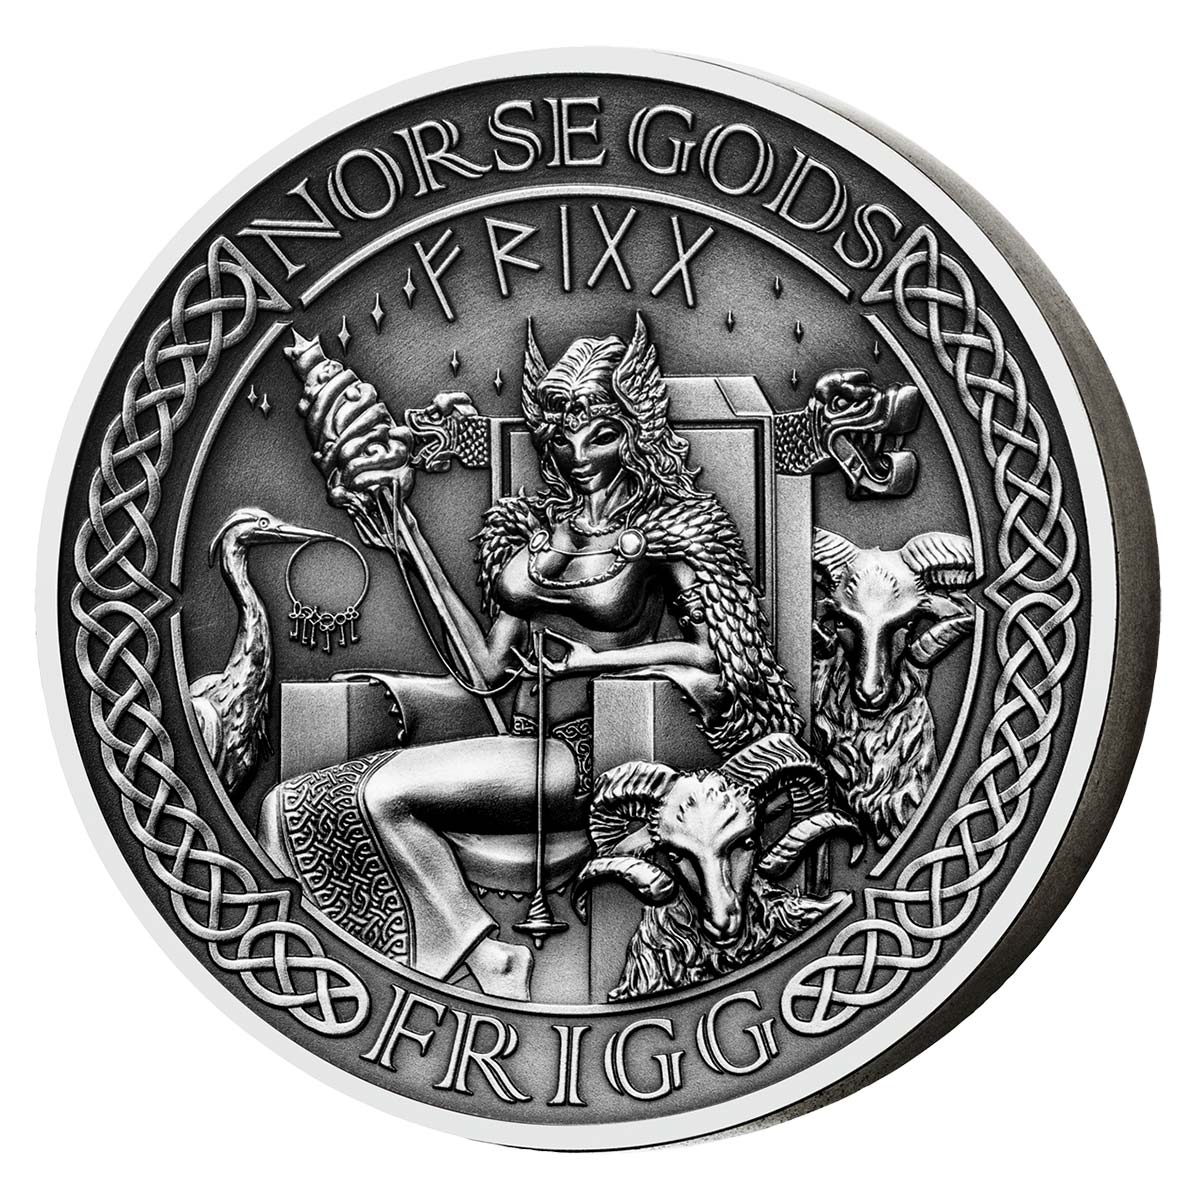 oxen crypto coin